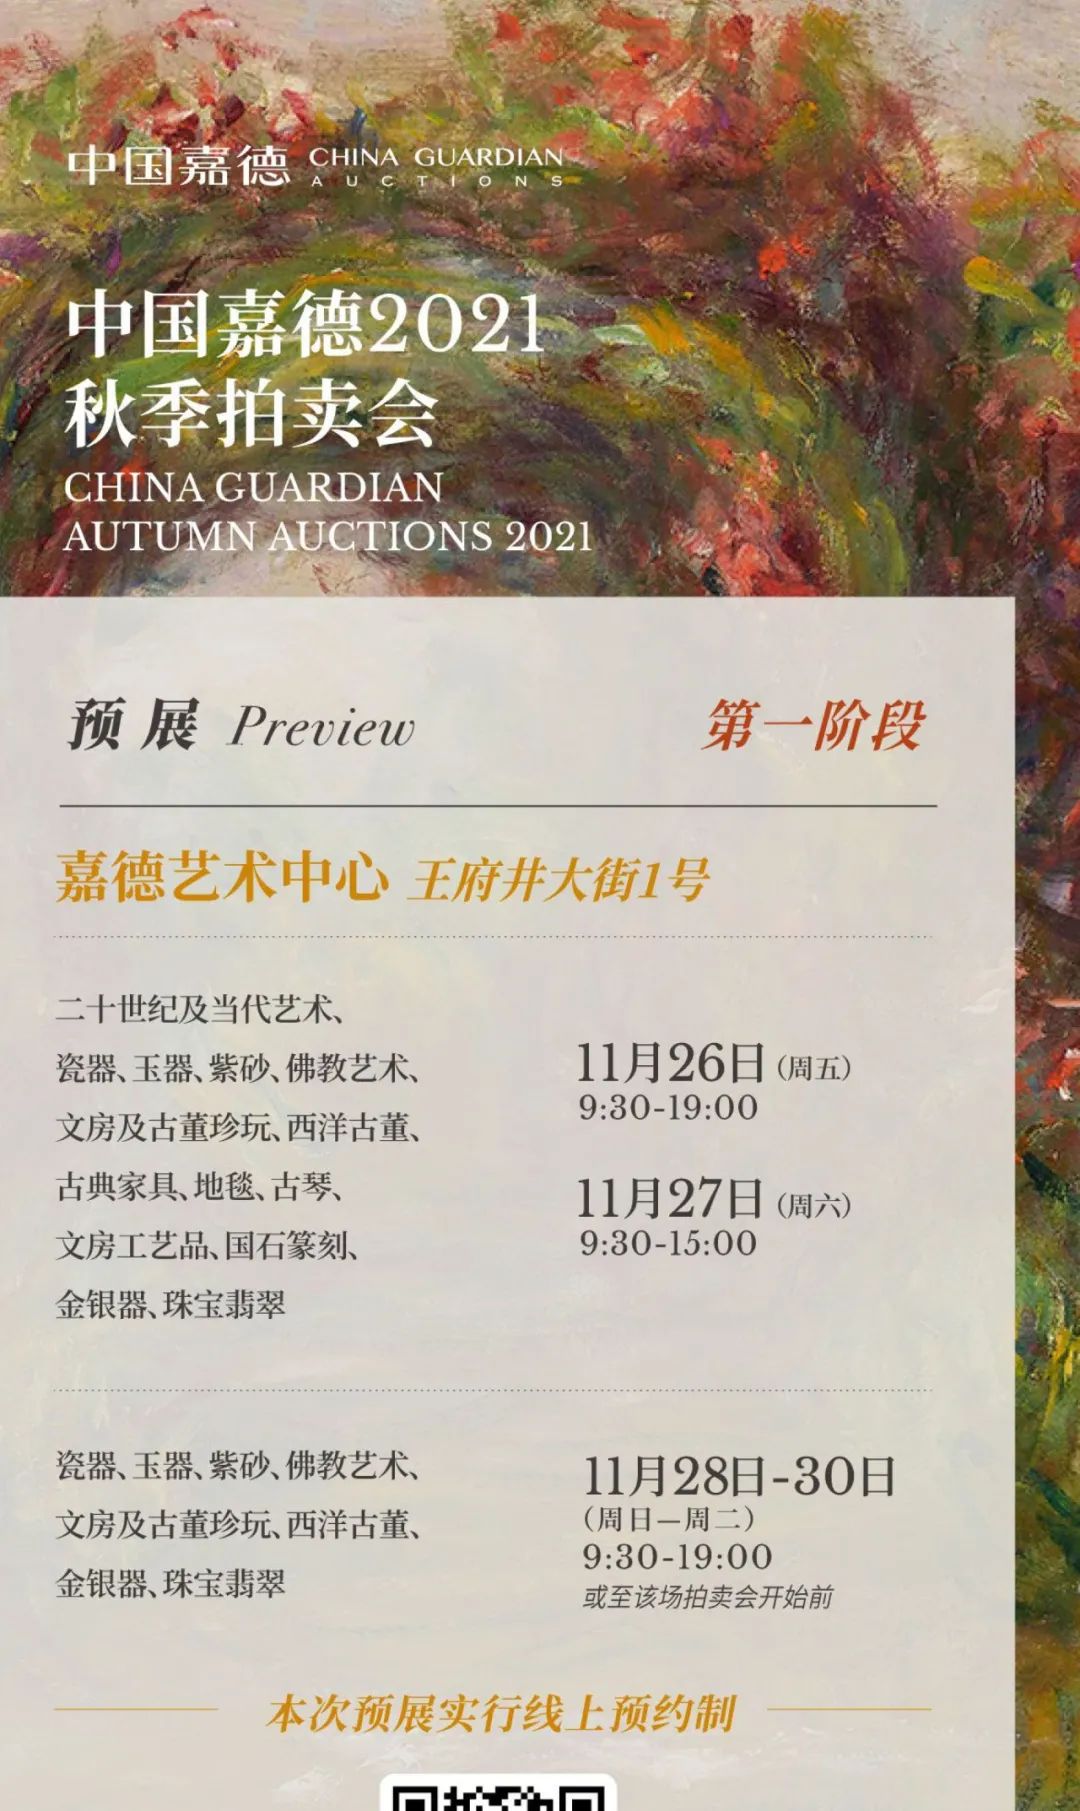 全景再现中国当代艺术40年之宏大图景（一）丨中国嘉德2021秋拍- 全民收藏网